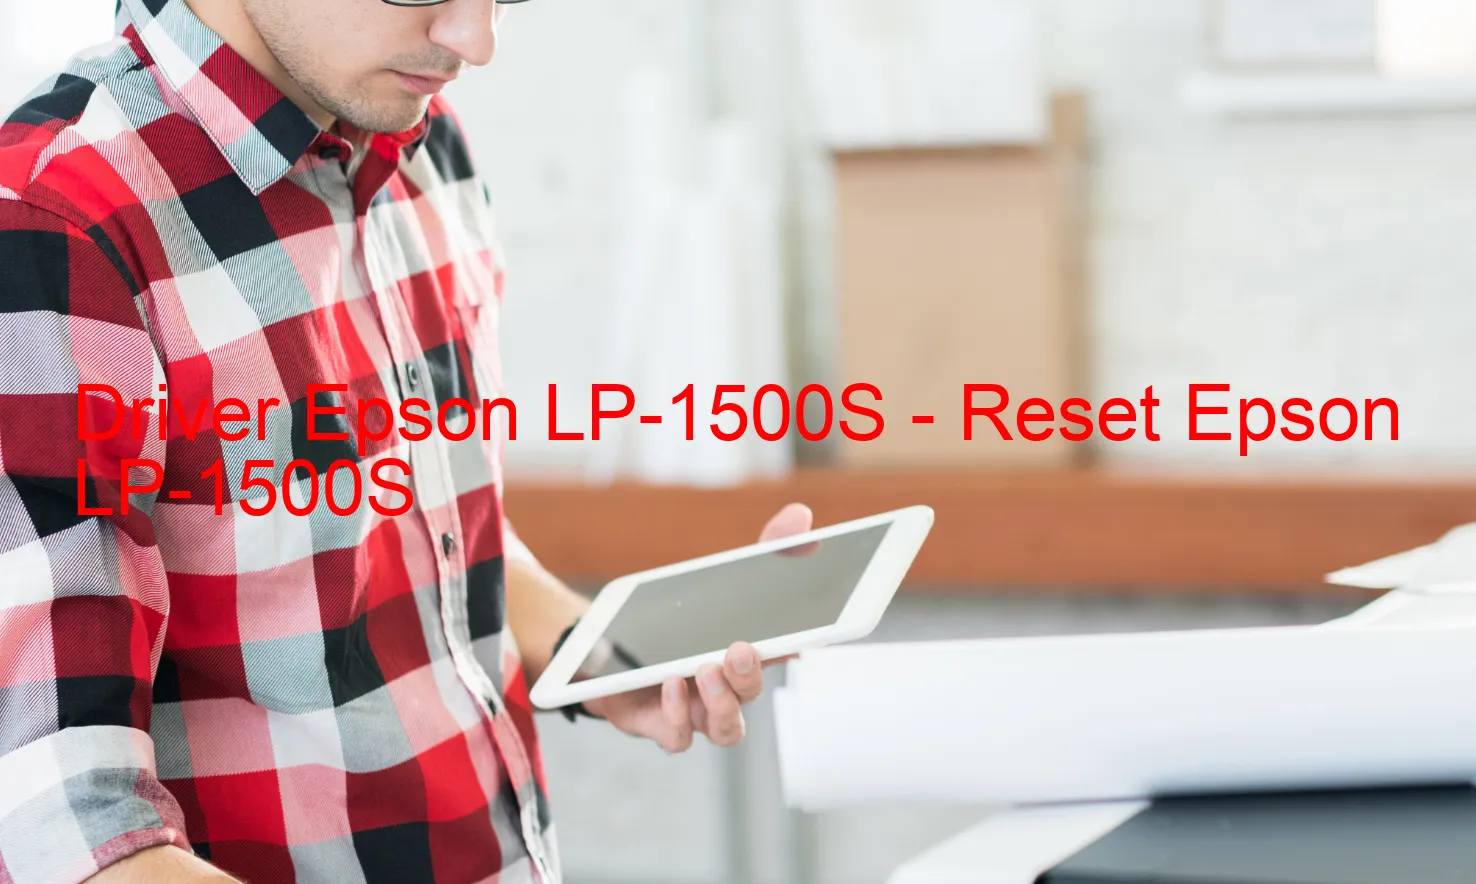 Epson LP-1500Sのドライバー、Epson LP-1500Sのリセットソフトウェア